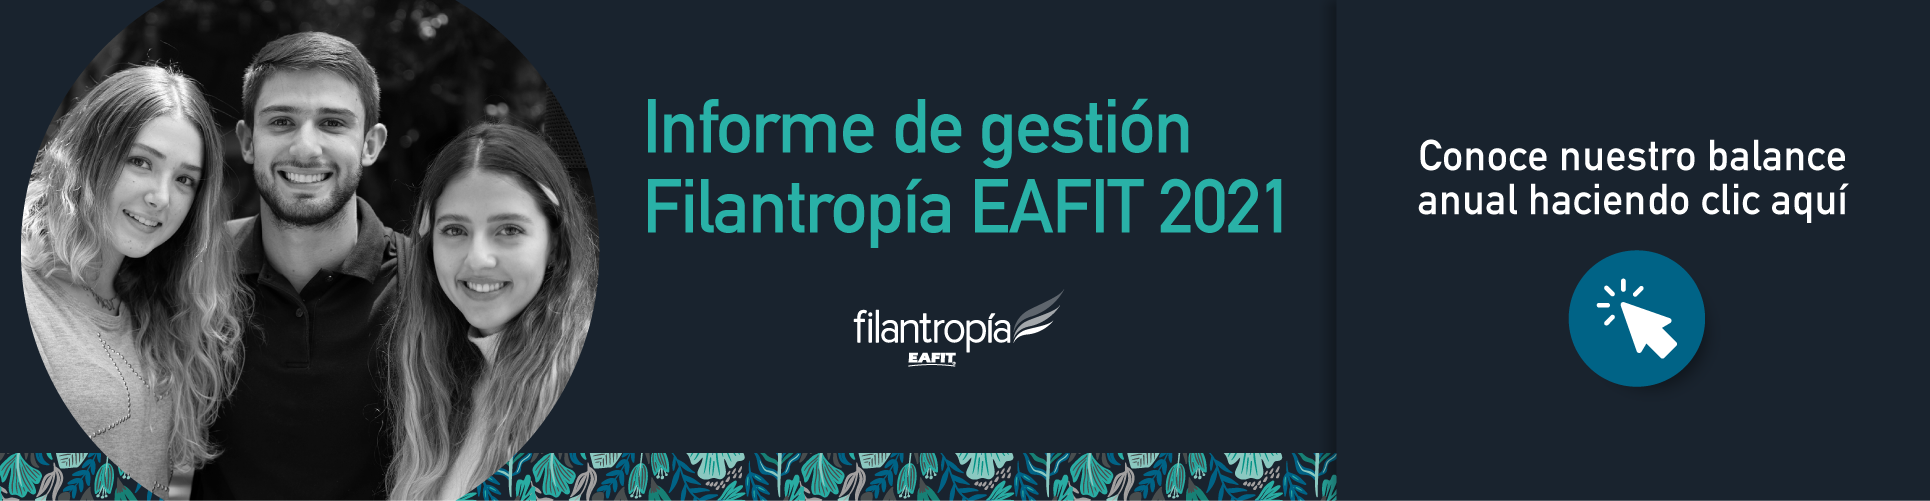 Informe de gestión 2021 - Filantropía EAFIT - Universidad EAFIT